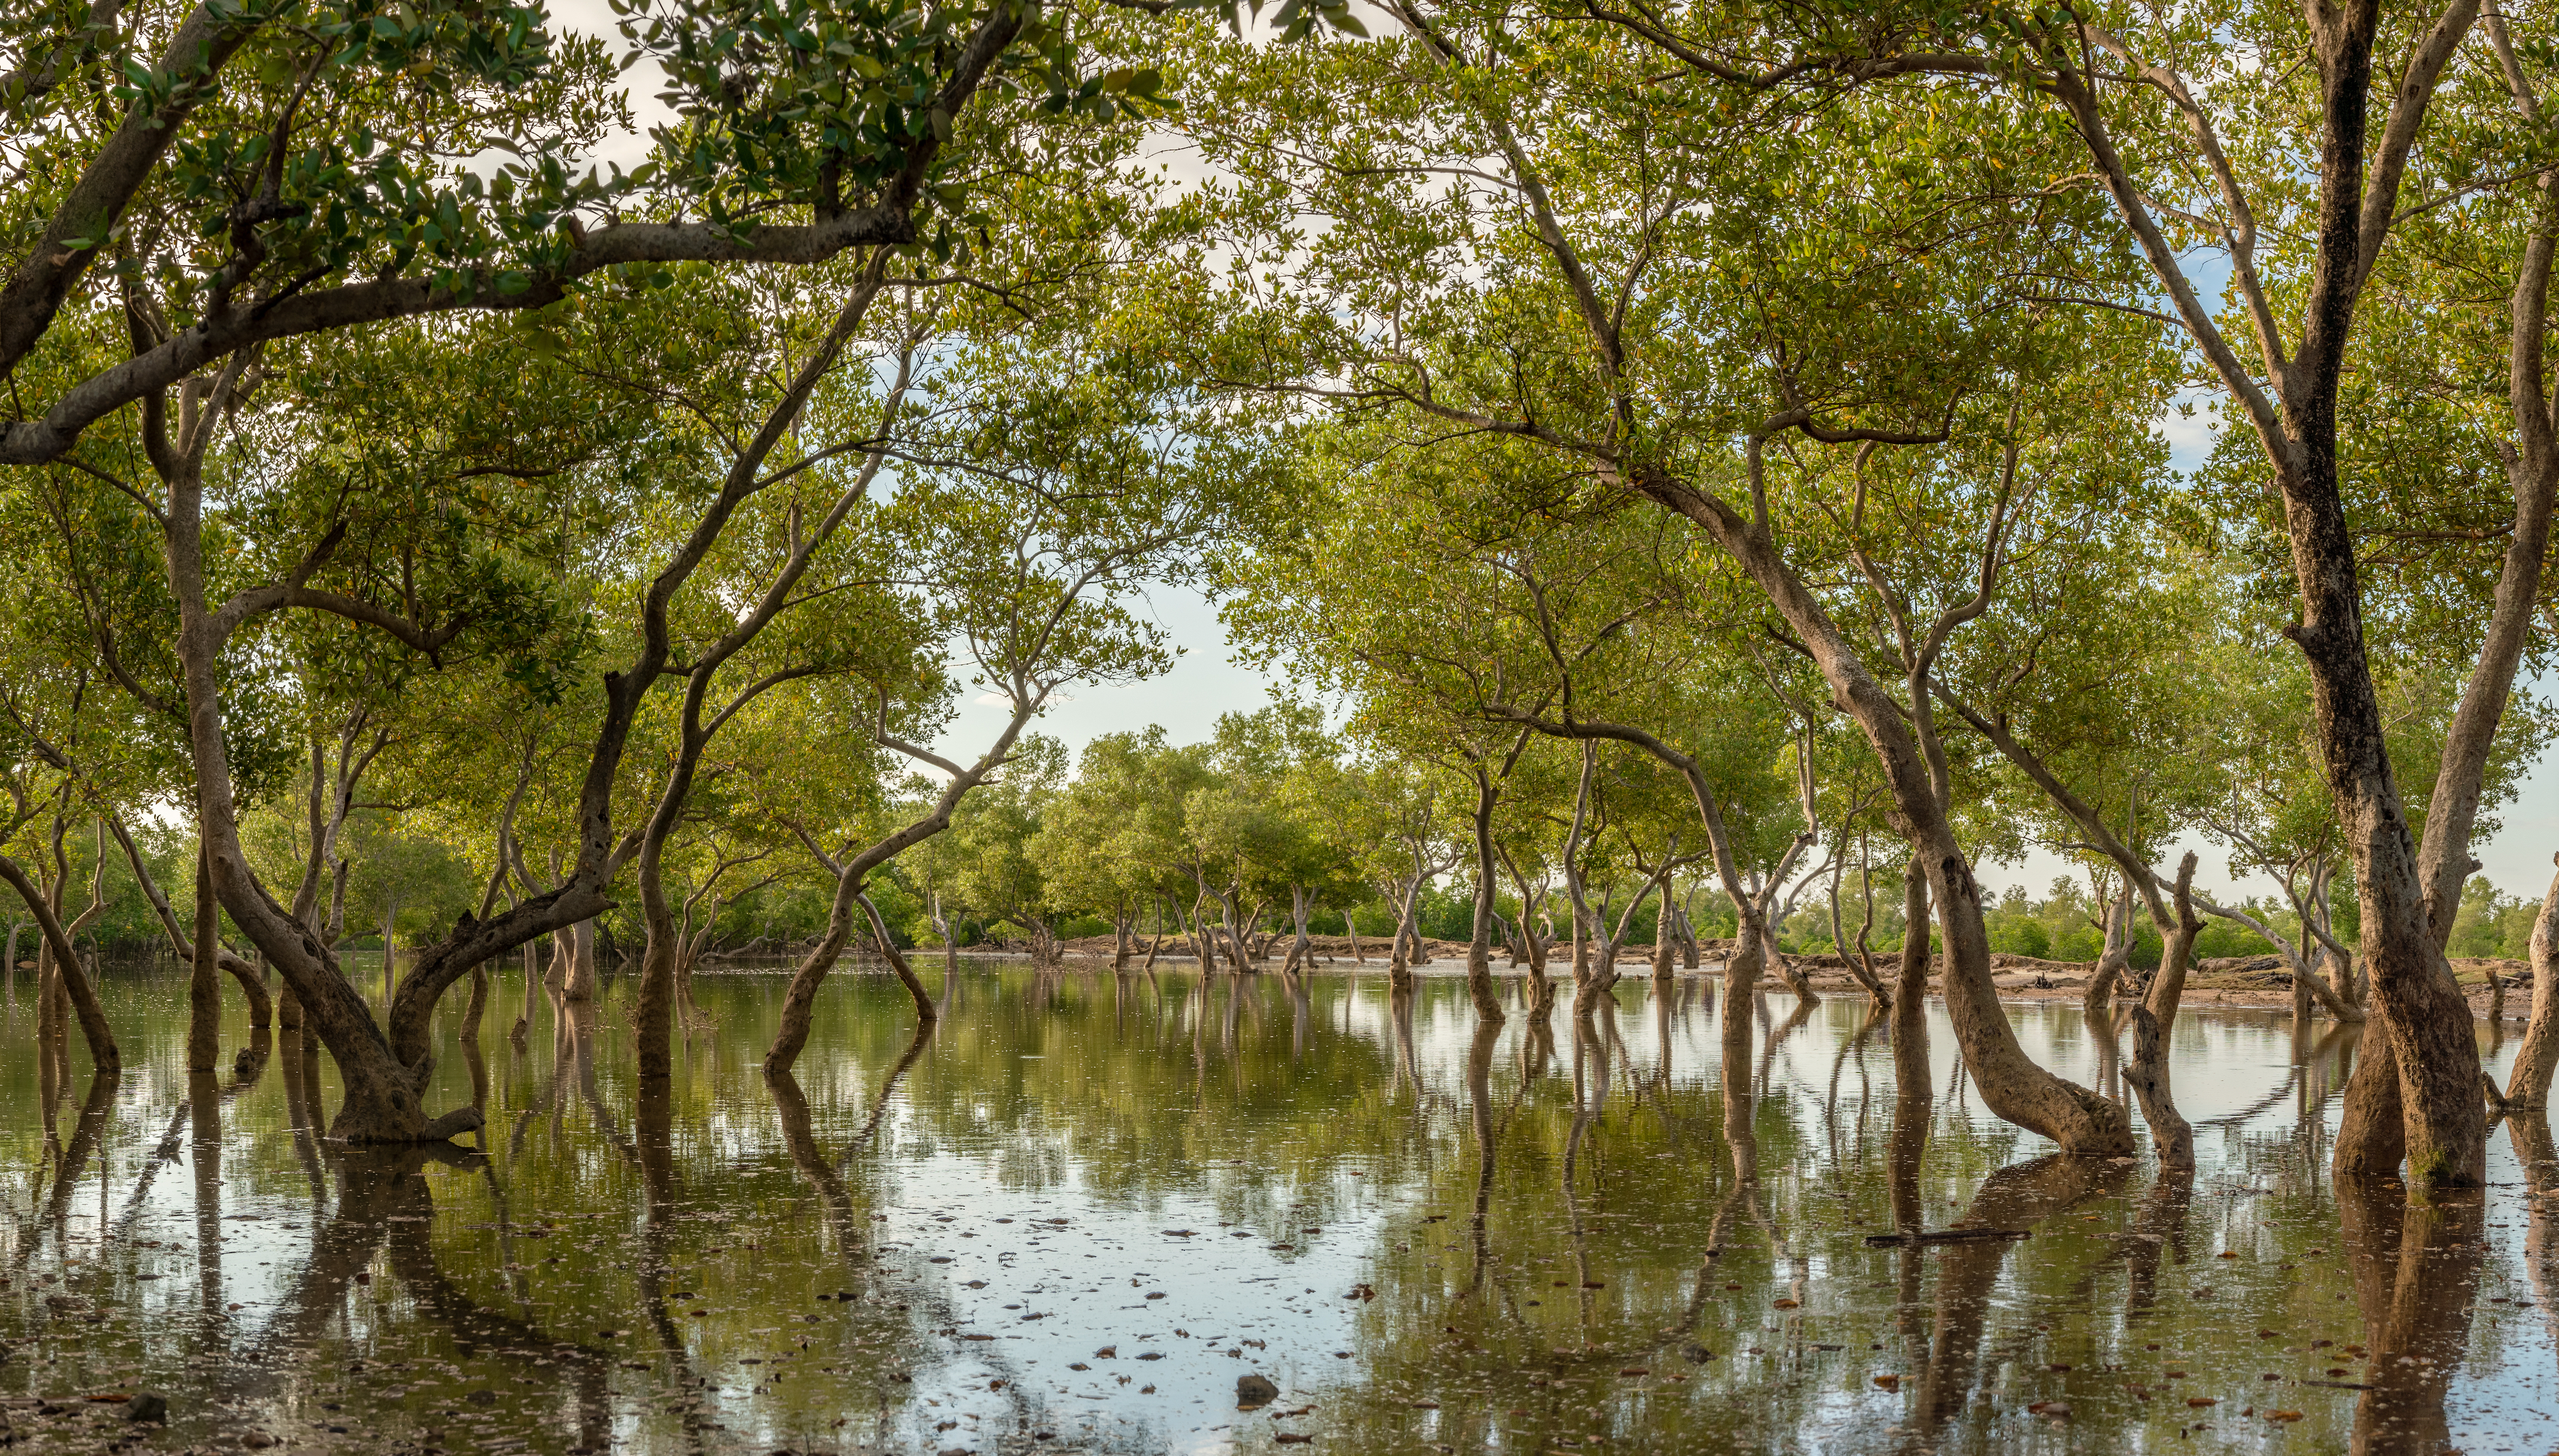 Madagascan mangrove